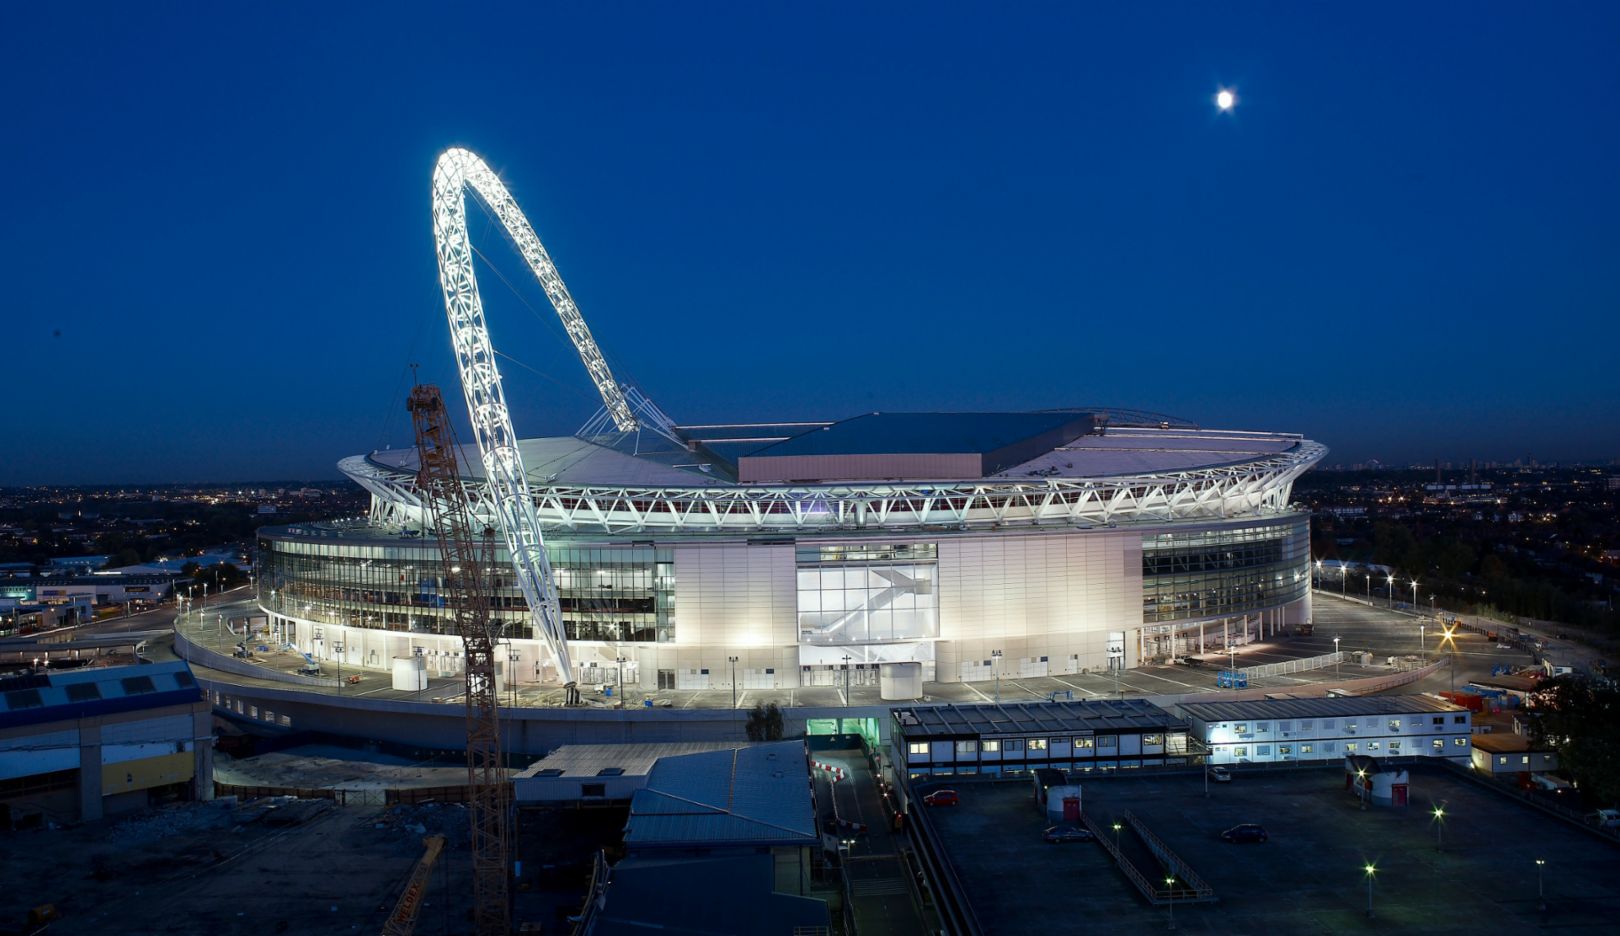 Das veraltete Stadion in London wurde im Jahr 2003 abgerissen. Der Entwurf für das neue Wembley Stadion stammt von Foster + Partners. Mit 90.000 Sitzplätzen und seiner schließbaren Kuppel ist es eine der weltweit größten überdachten Arenen. Foto: Nigel Young / Foster + Partners